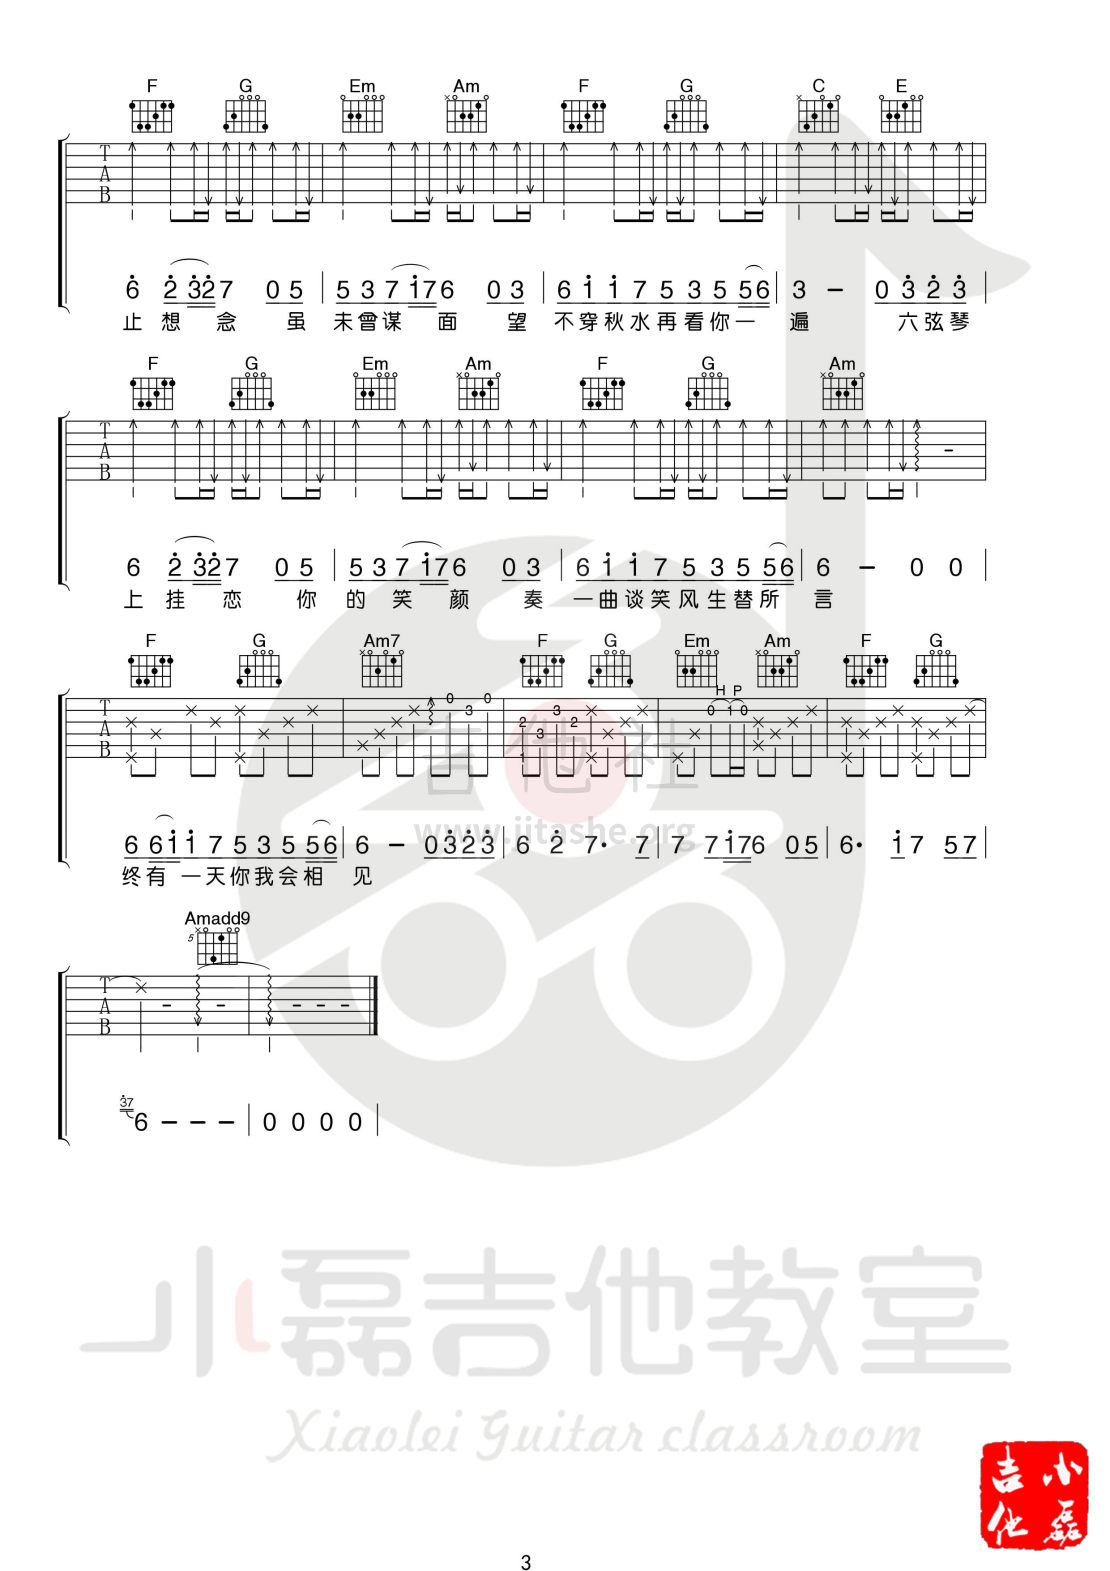 打印:无妄诗(小磊吉他教室出品)吉他谱_群星(Various Artists)_0003.jpg